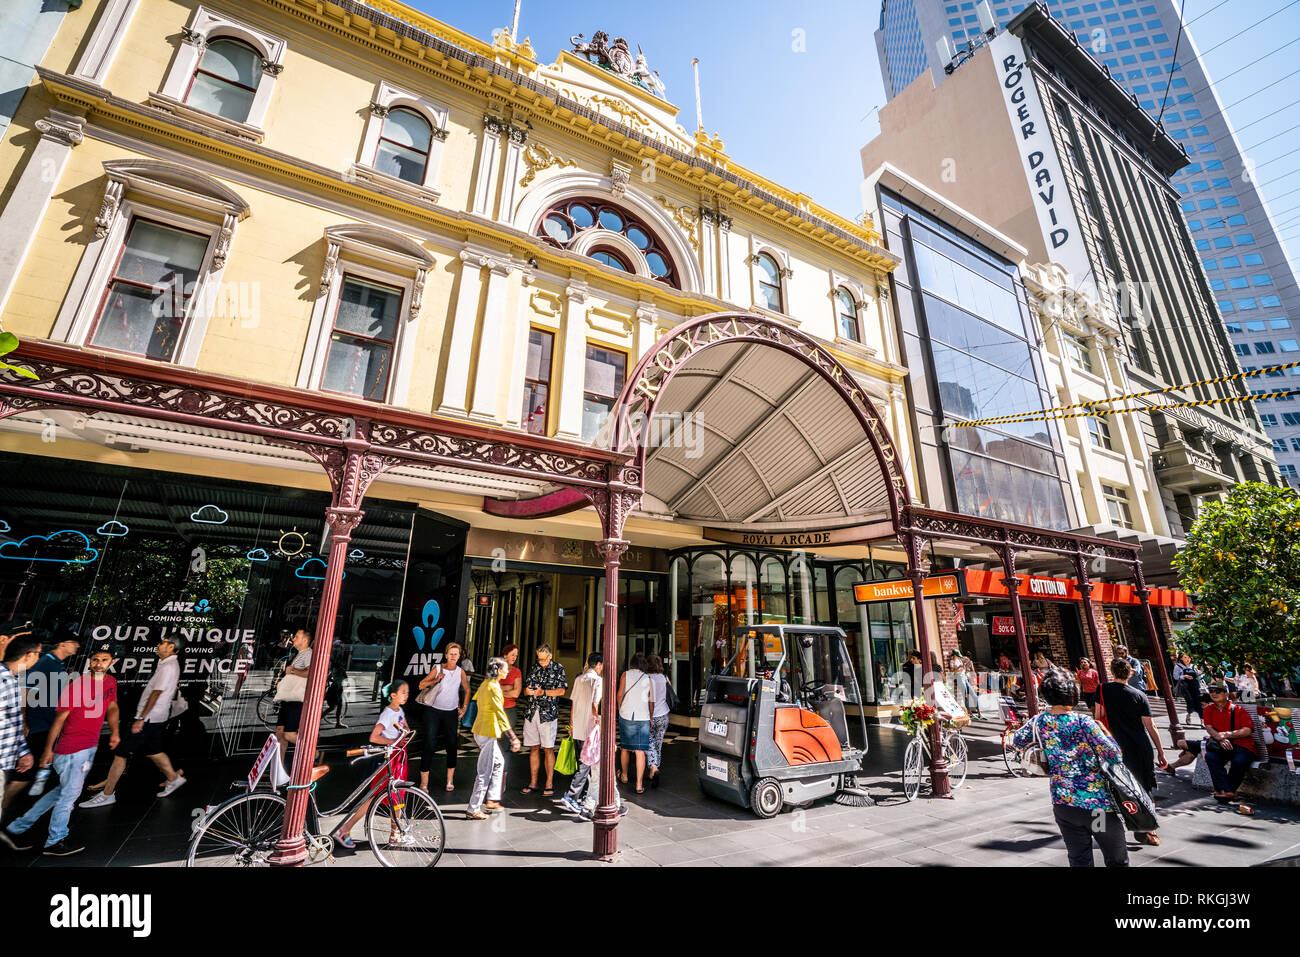 3e janvier 2019, Melbourne, Australie : Royal Arcade entrée de l'édifice et façade vue sur Bourke Street à Melbourne, Australie Banque D'Images